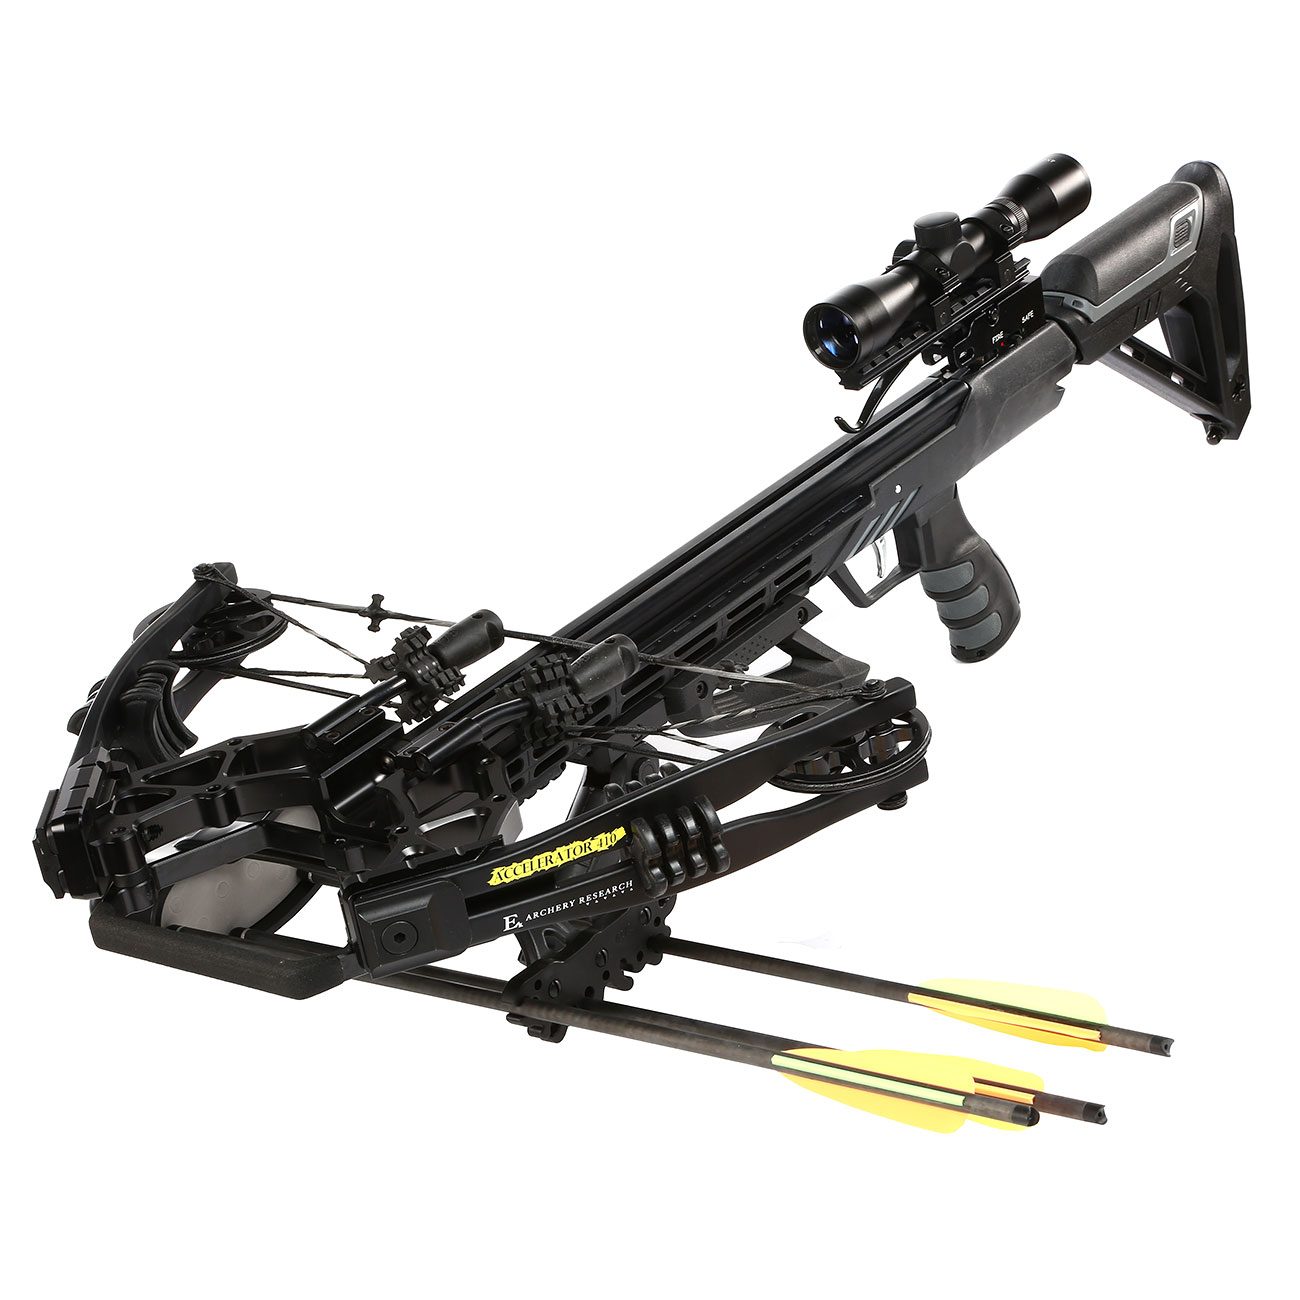 EK Archery Compound Armbrust Accelerator 410+ 185 lbs Komplettset schwarz Bild 1